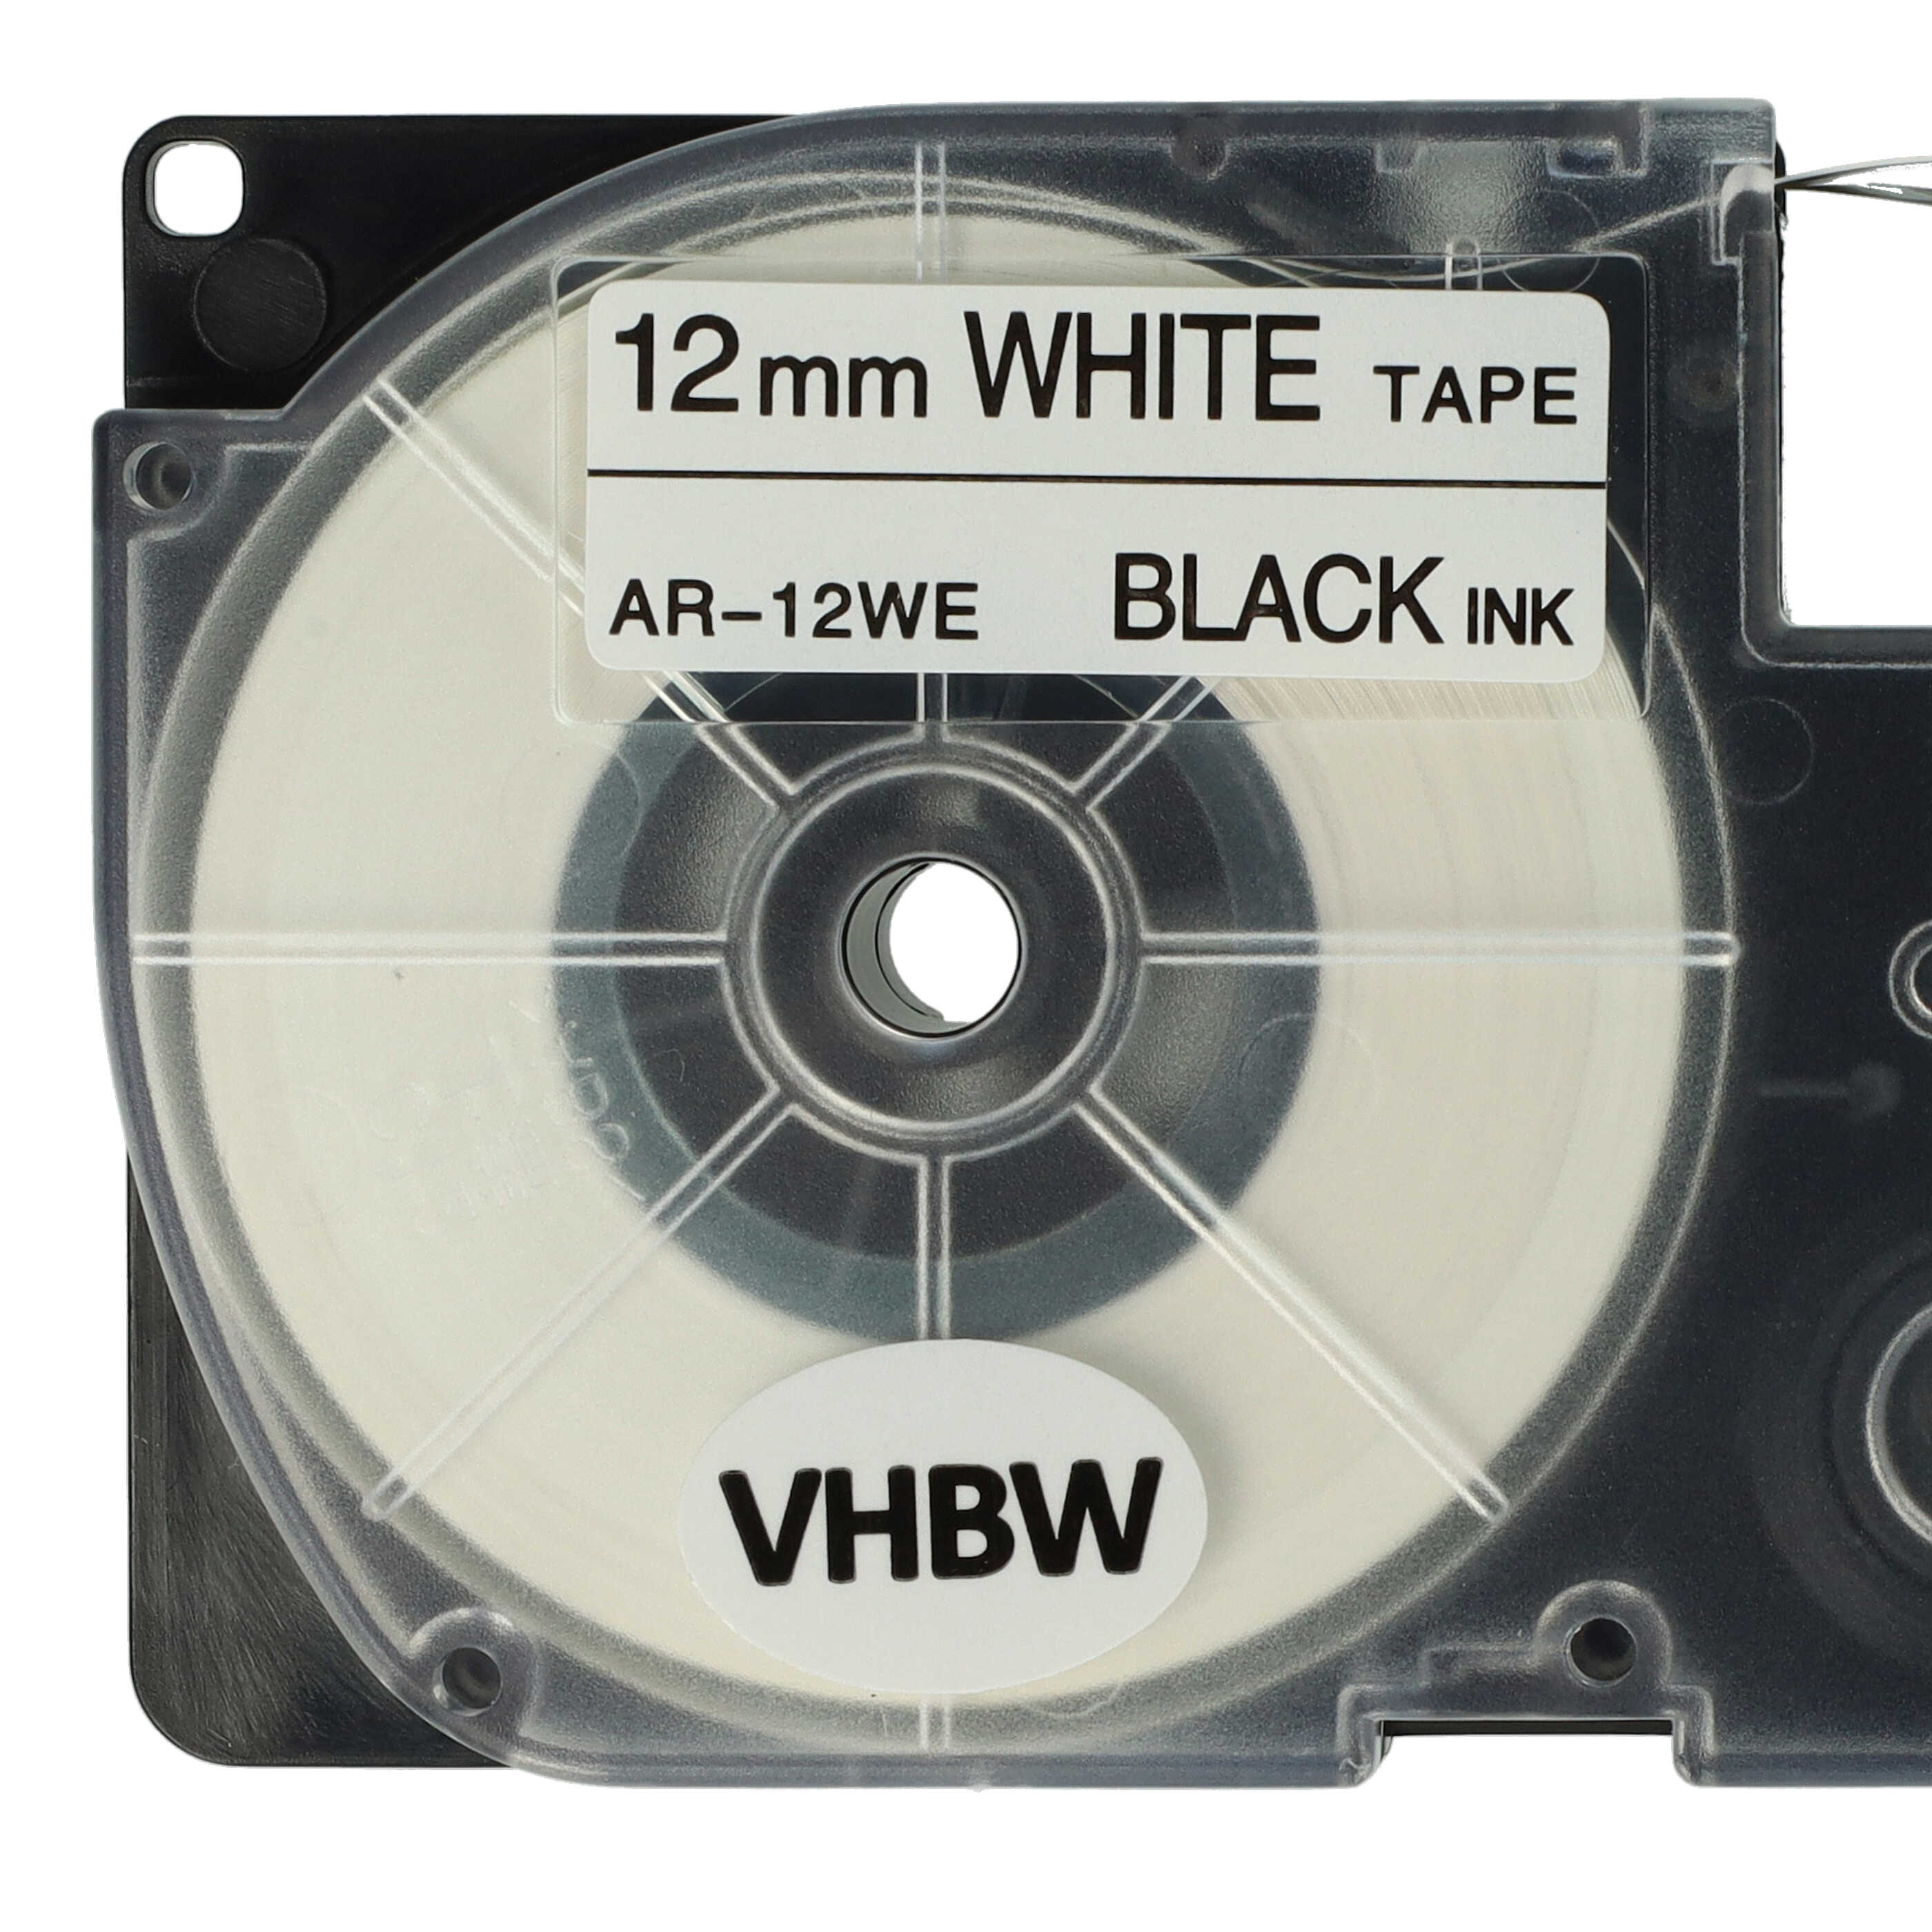 2x Schriftband als Ersatz für Casio XR-12WE, XR-12WE1 - 12mm Schwarz auf Weiß